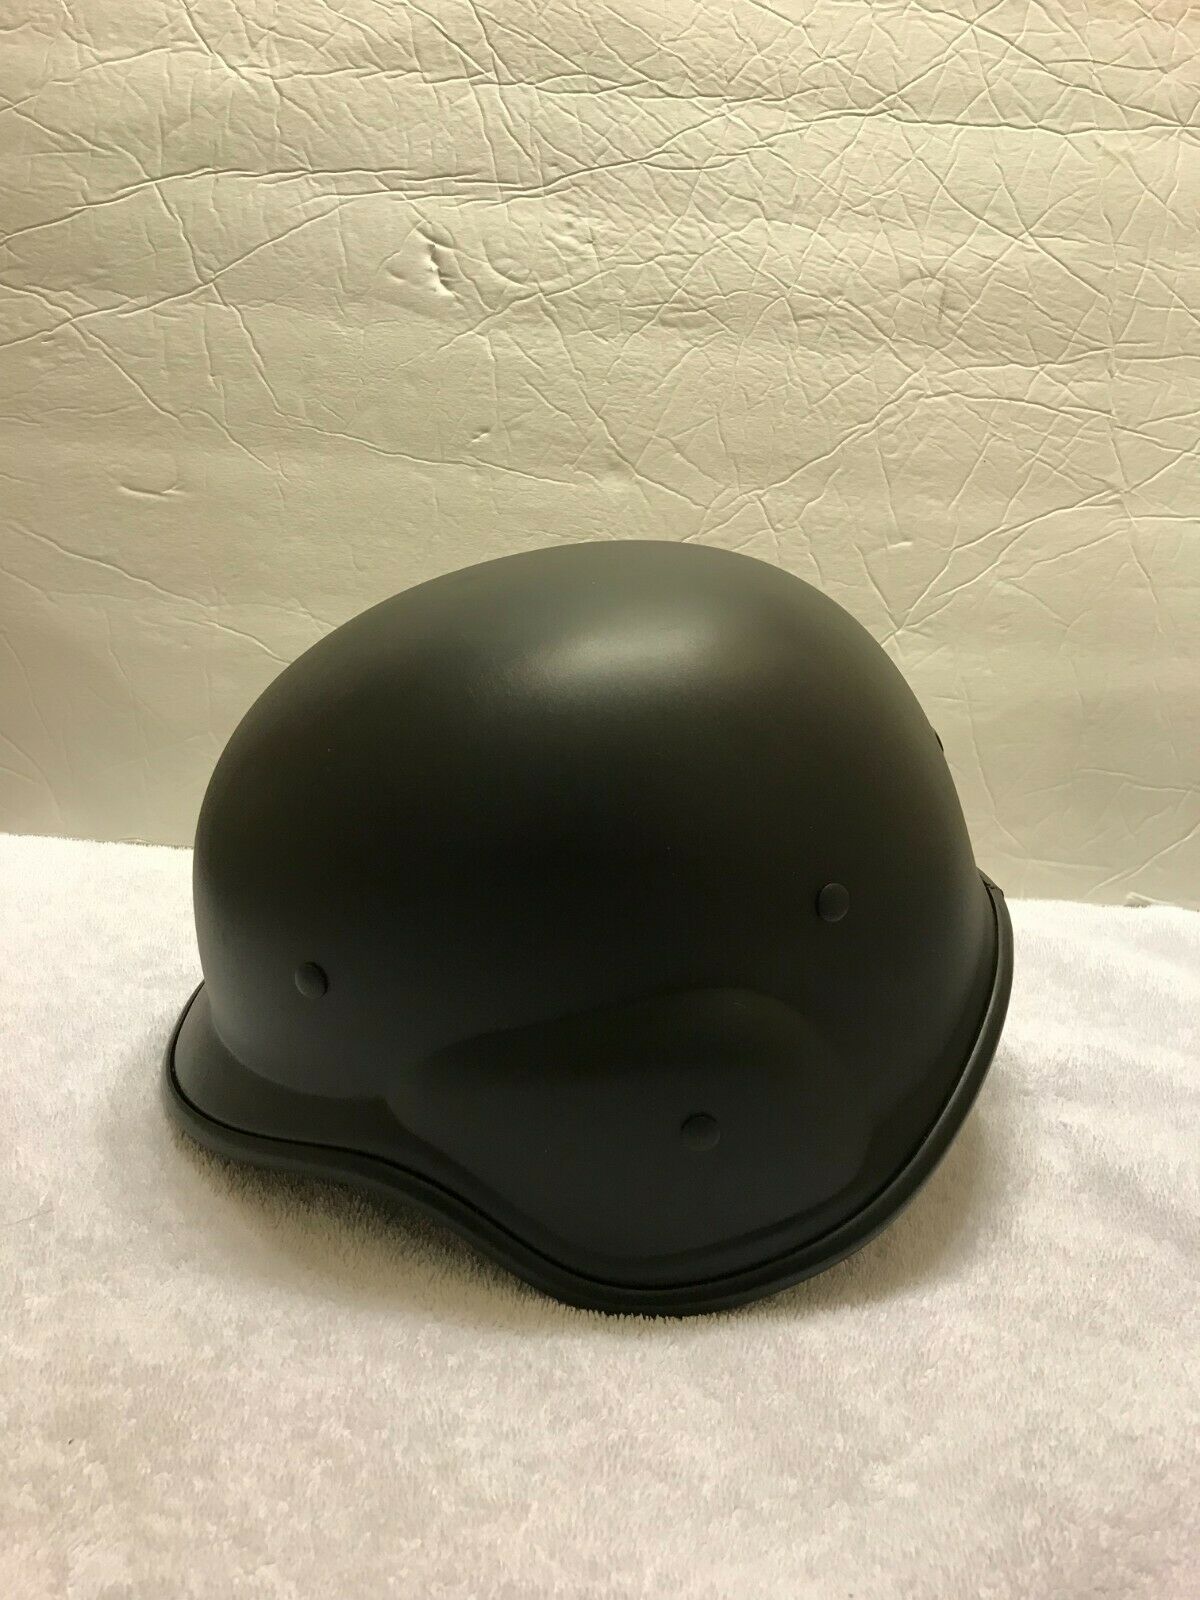 M88 Helmet Black Military Swat Police Head Gear New